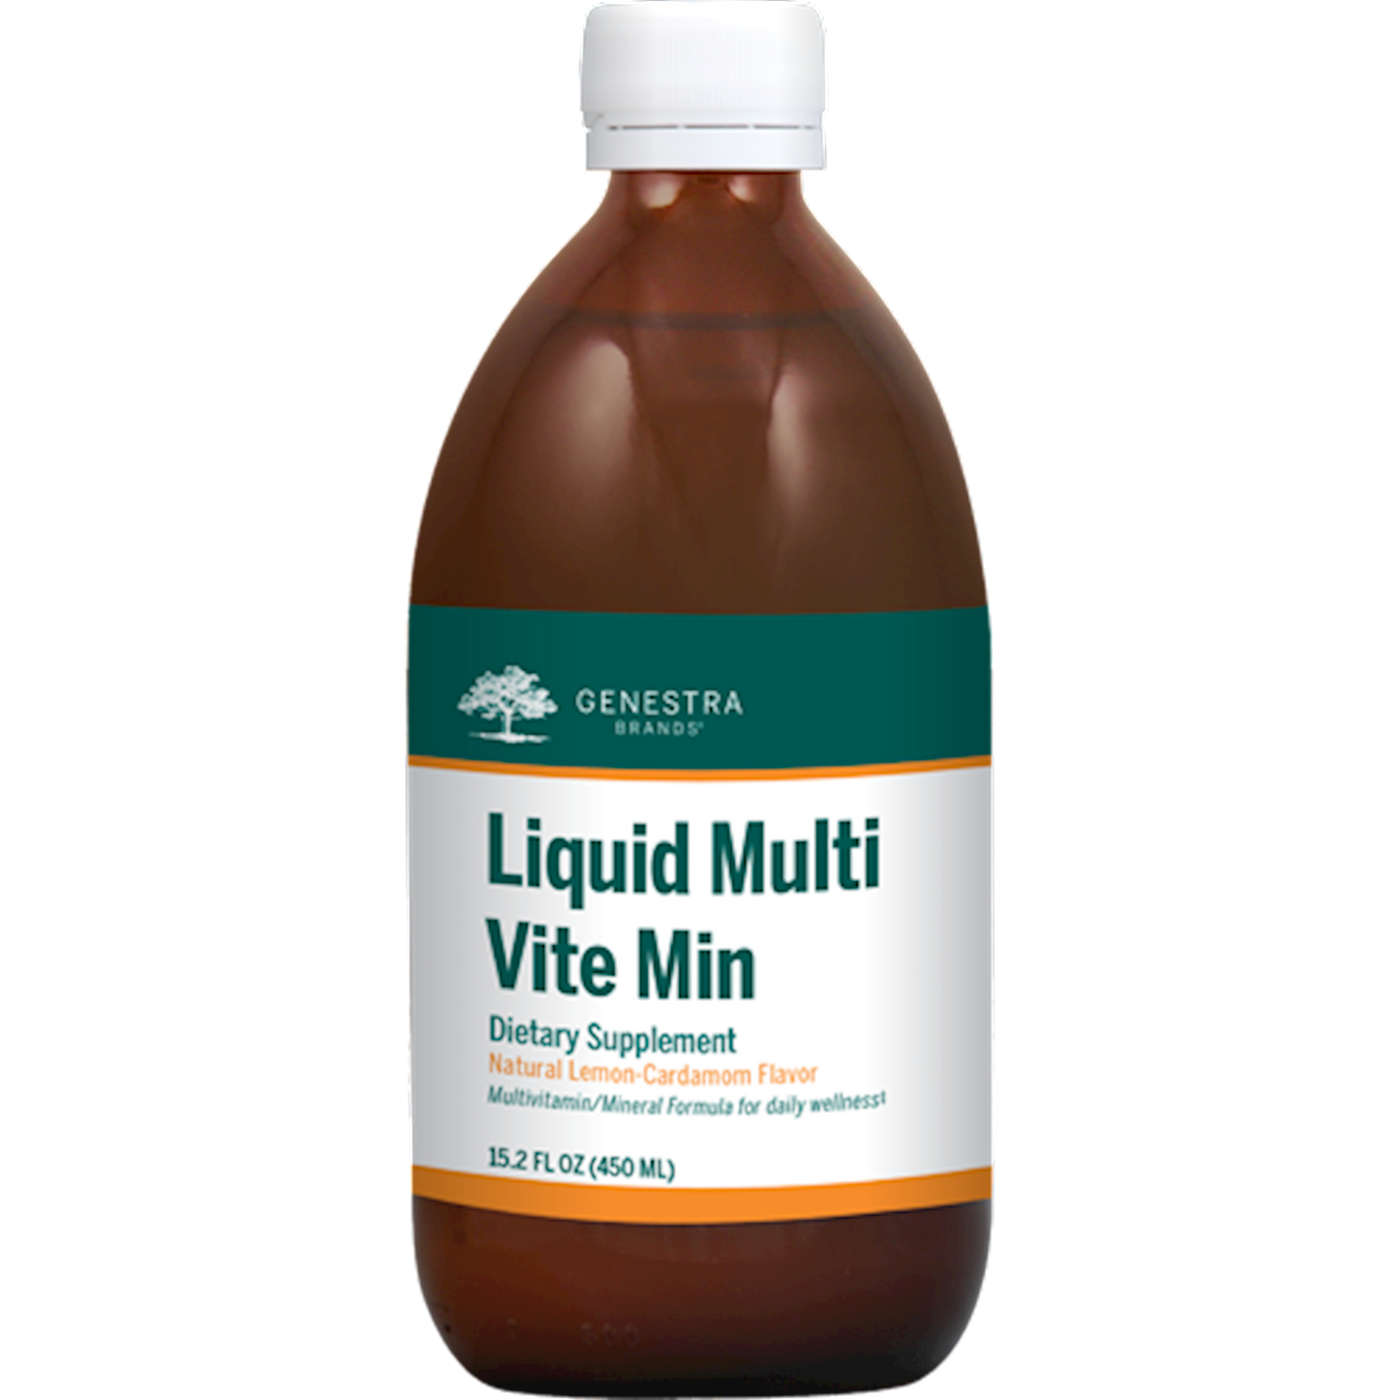 Liquid Multi Vite Min 15.2 fl oz Curated Wellness